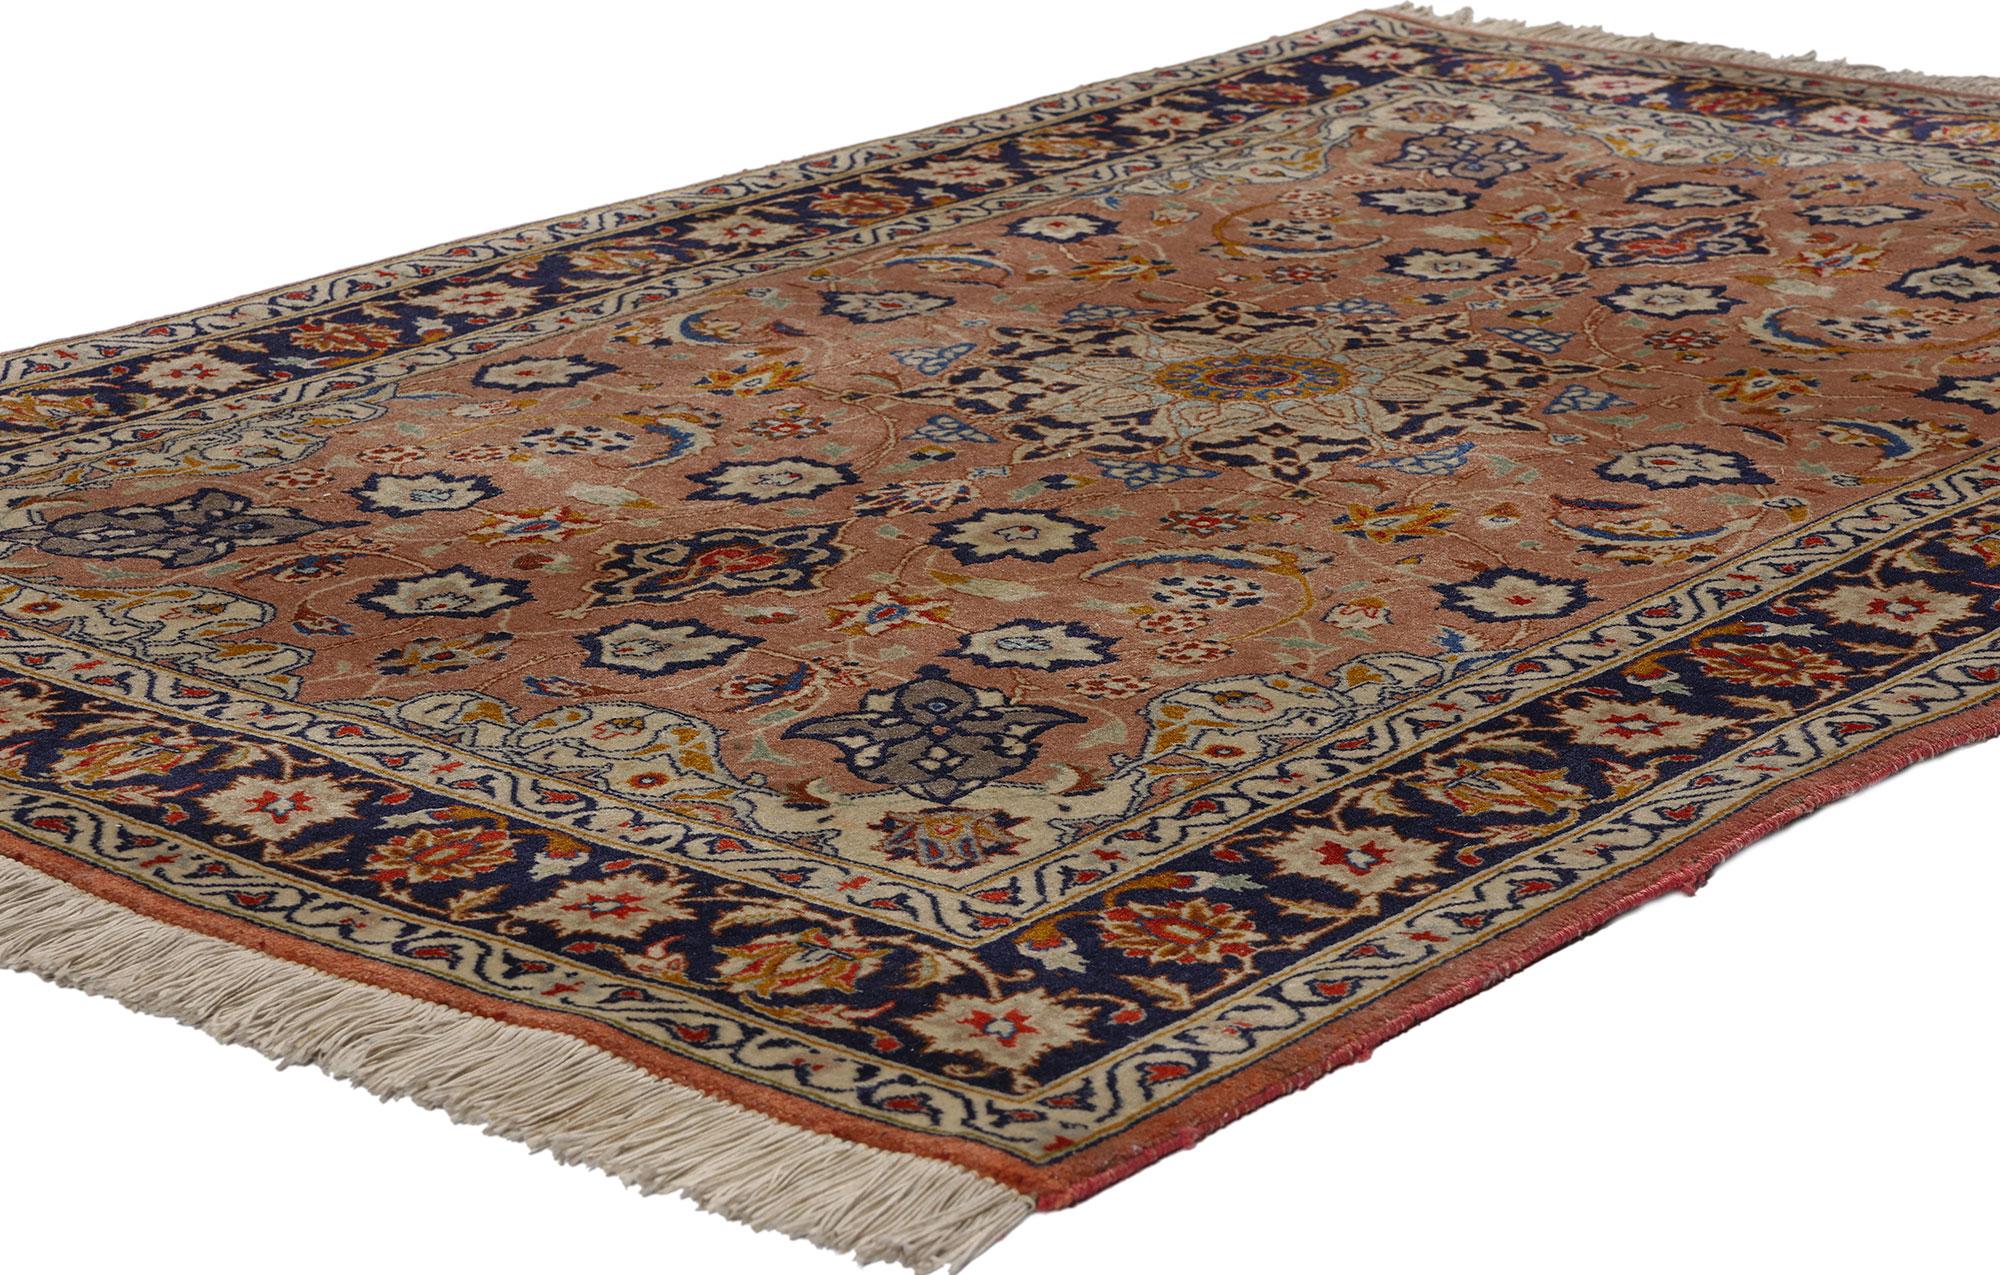 78702 Petit tapis persan vintage Tabriz, 03'05 x 05'01. Veuillez noter que cette liste ne concerne qu'une seule pièce. L'existence d'une pièce assortie ajoute à sa rareté. Les tapis persans de Tabriz, originaires de l'ancienne ville de Tabriz, dans